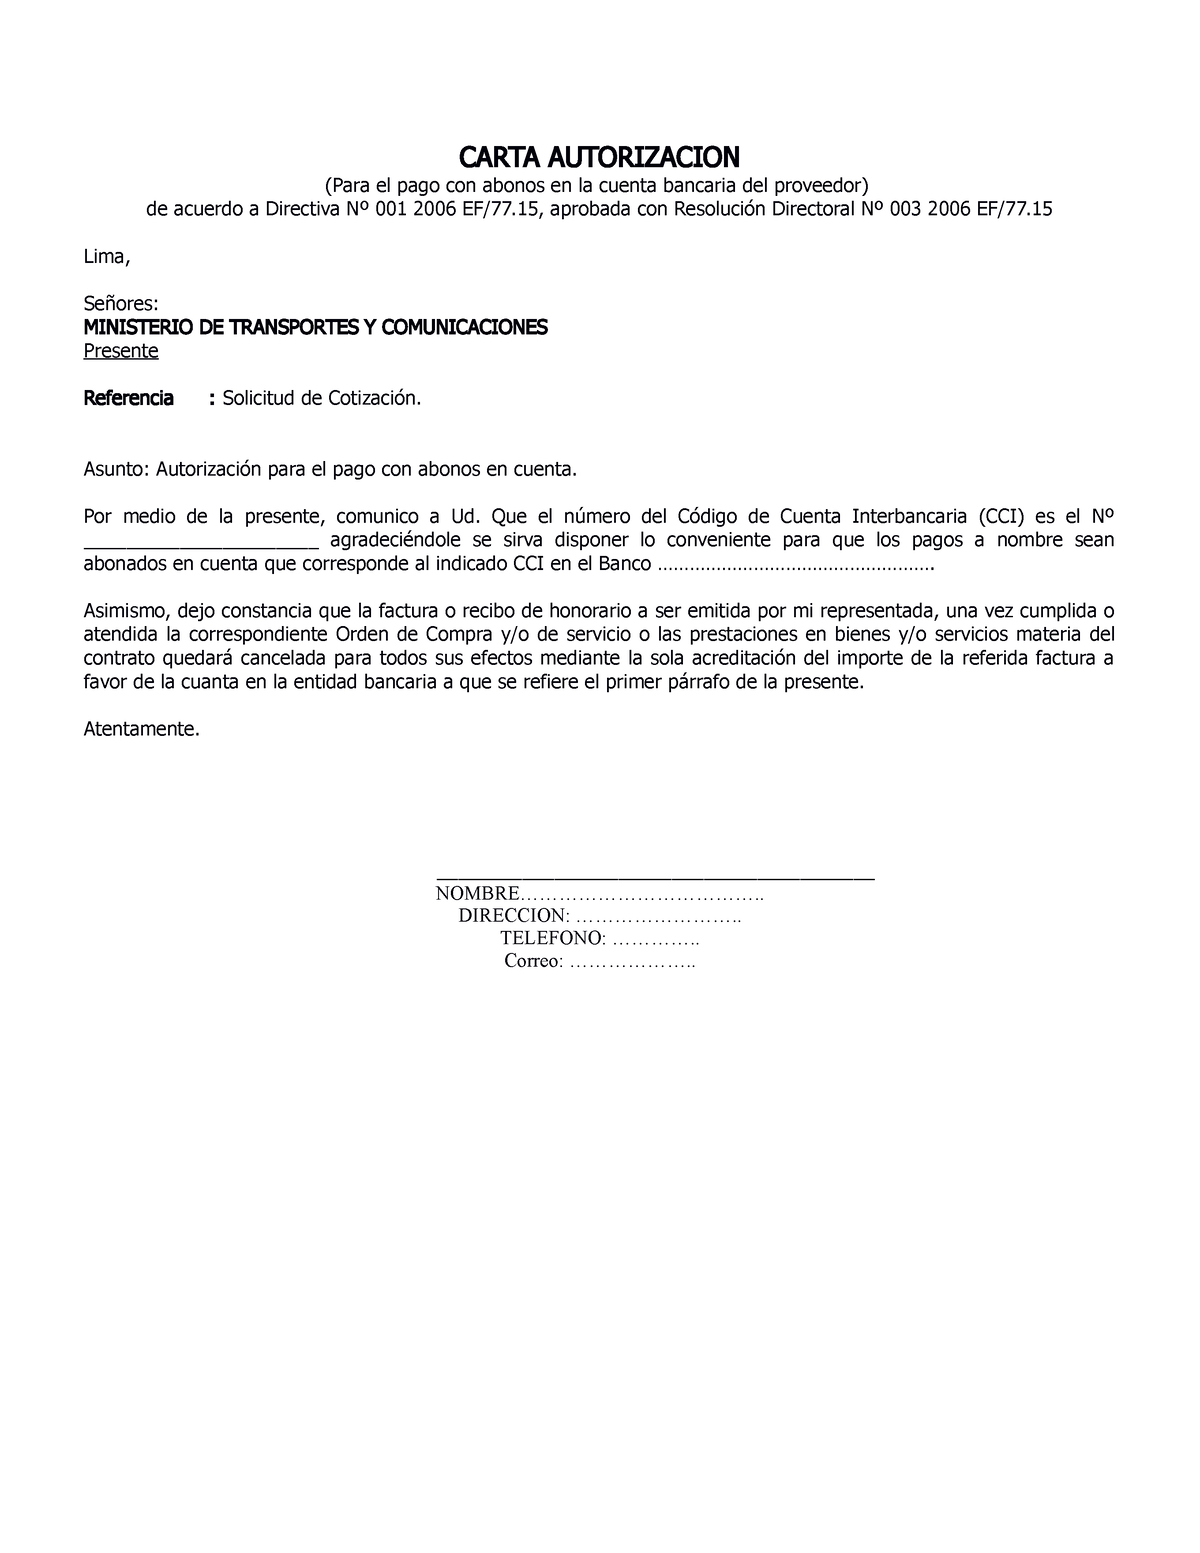 Carta Autorizacion nuevo - CARTA AUTORIZACION (Para el pago con abonos ...